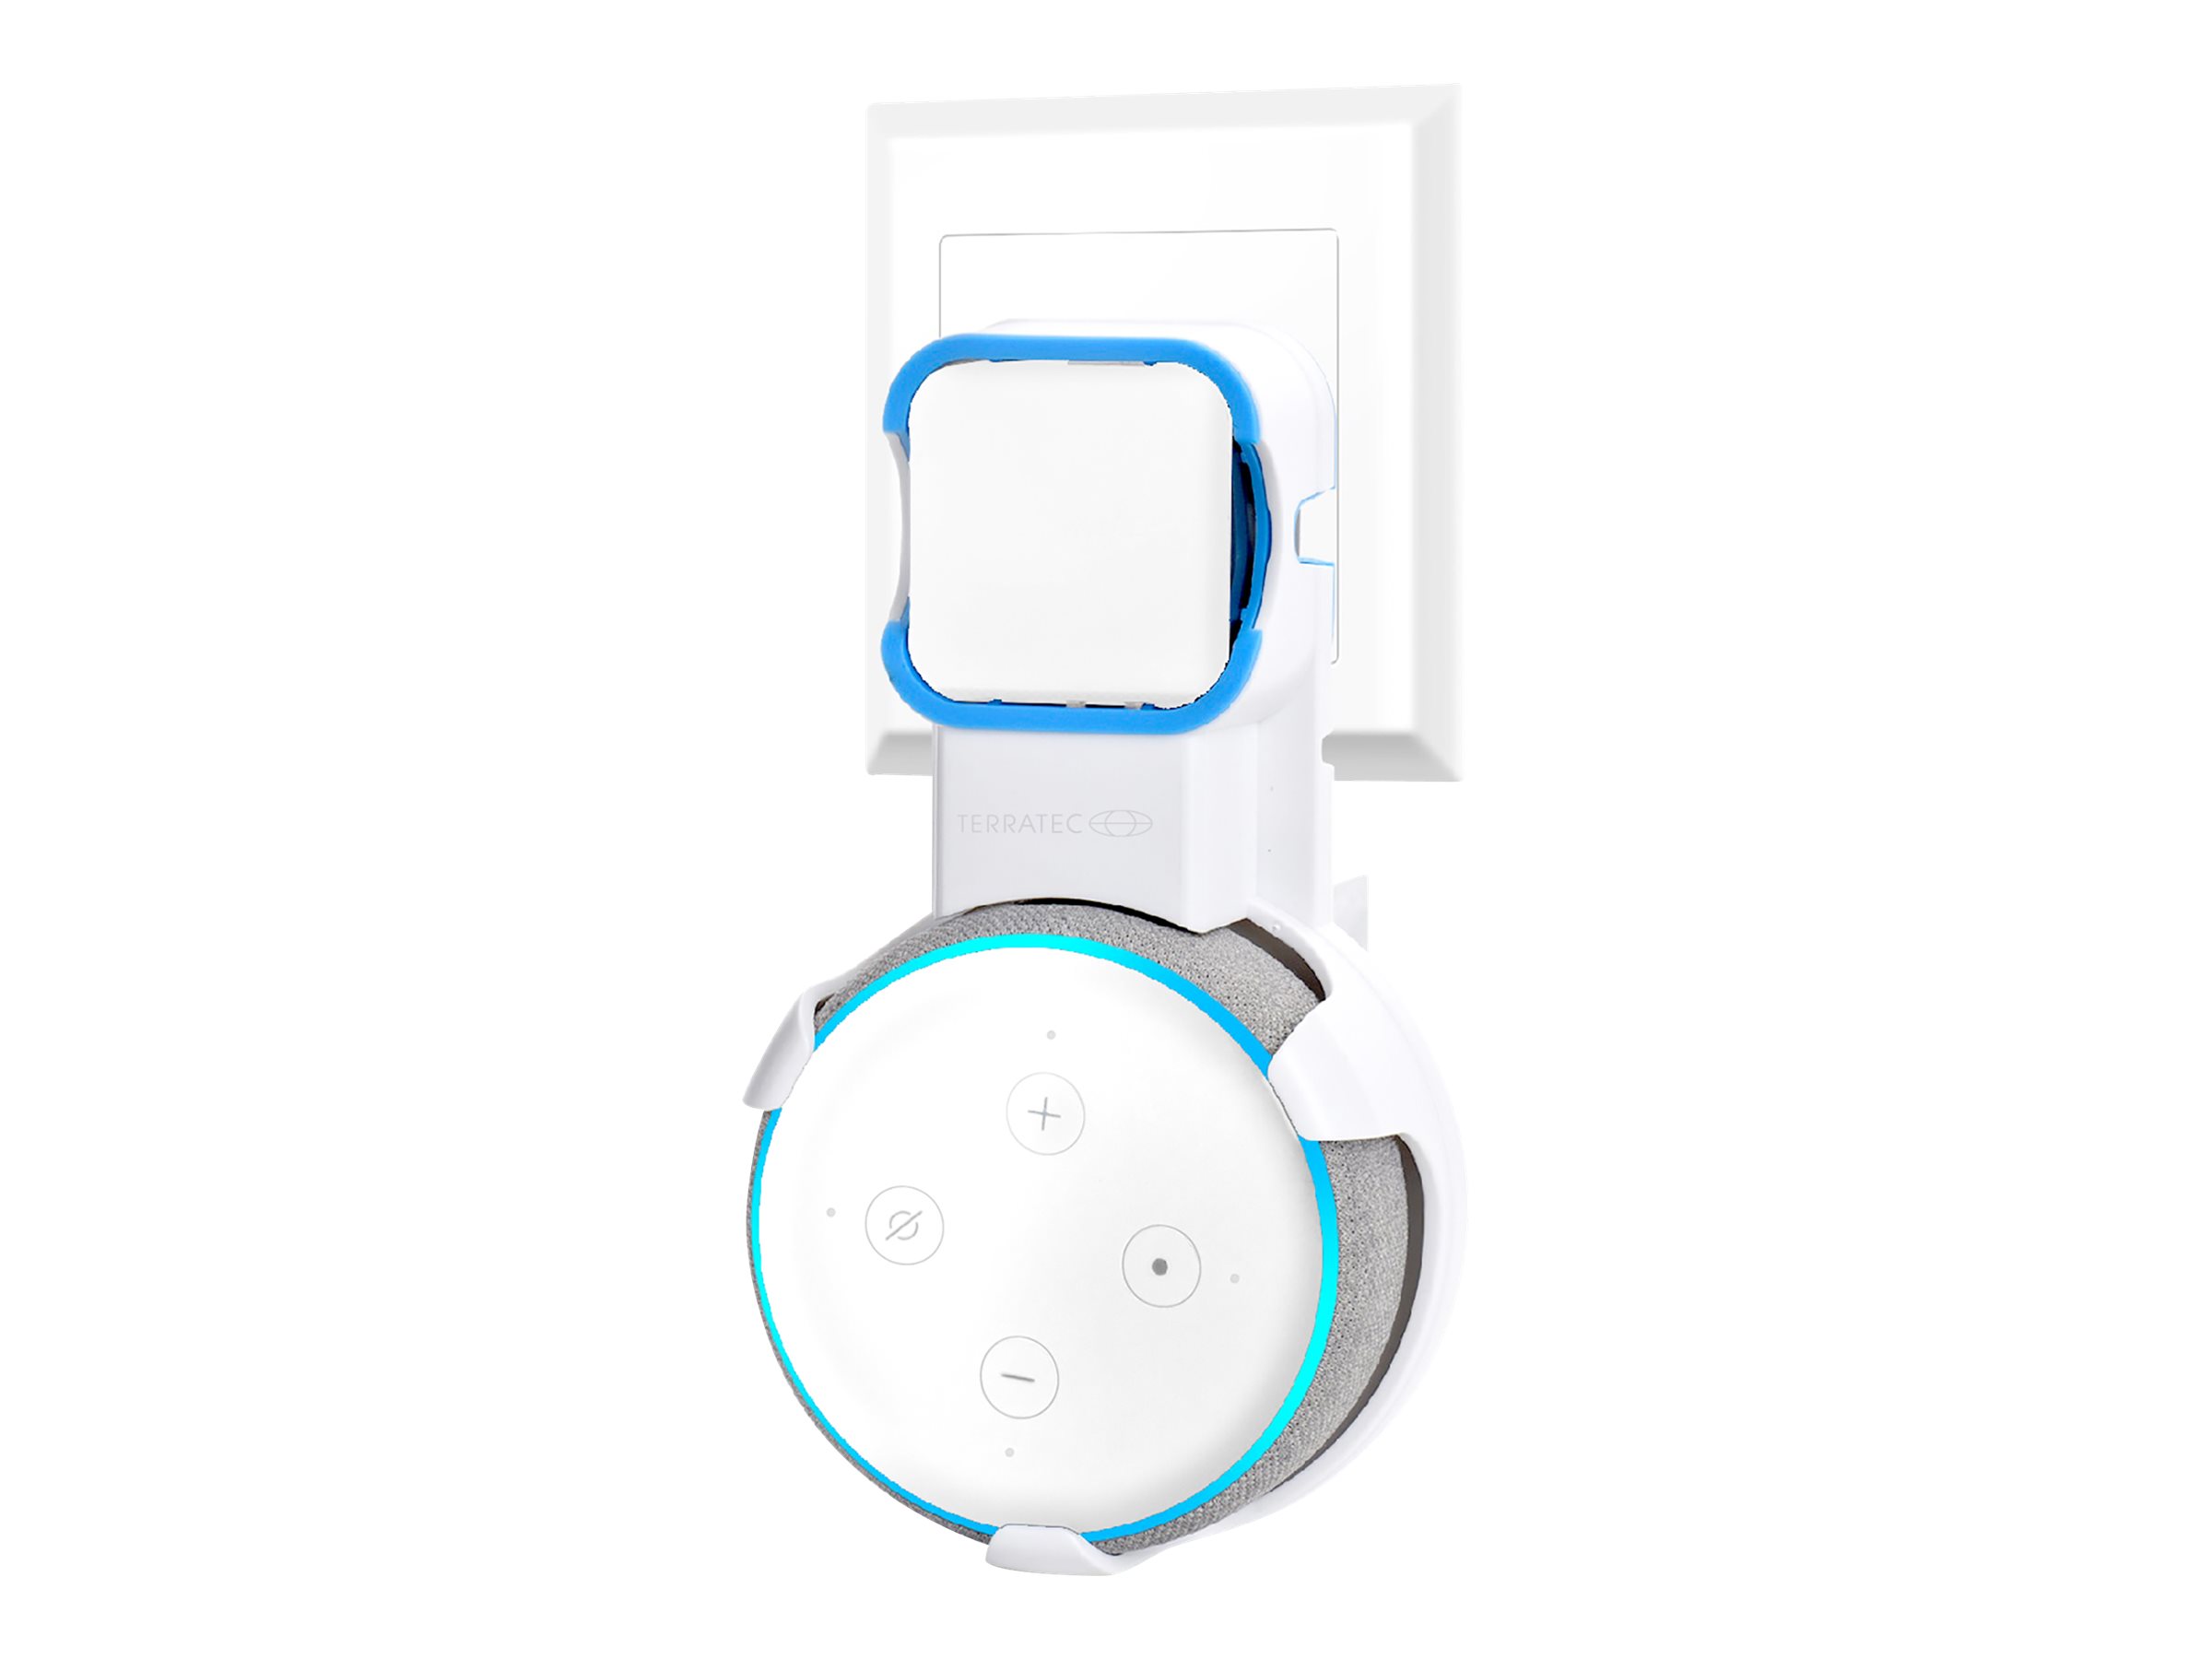 TerraTec Hold Me Echo - Befestigungskit für Smart Speaker - Wechselstrom-Steckdose - für Amazon Echo Dot (3rd Generation)